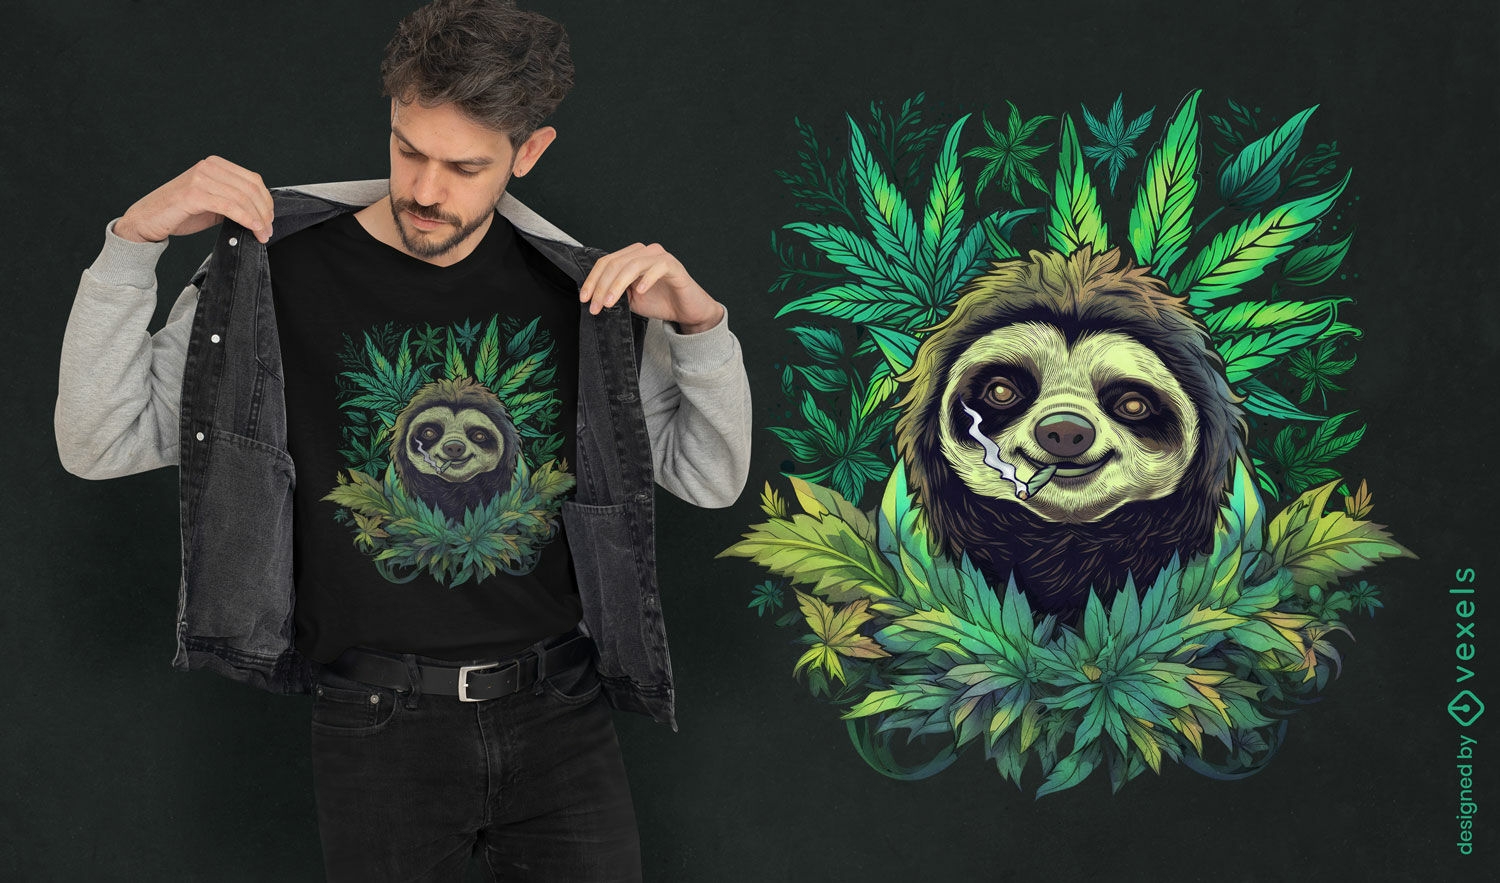 Cannabis sloth t-shirt design